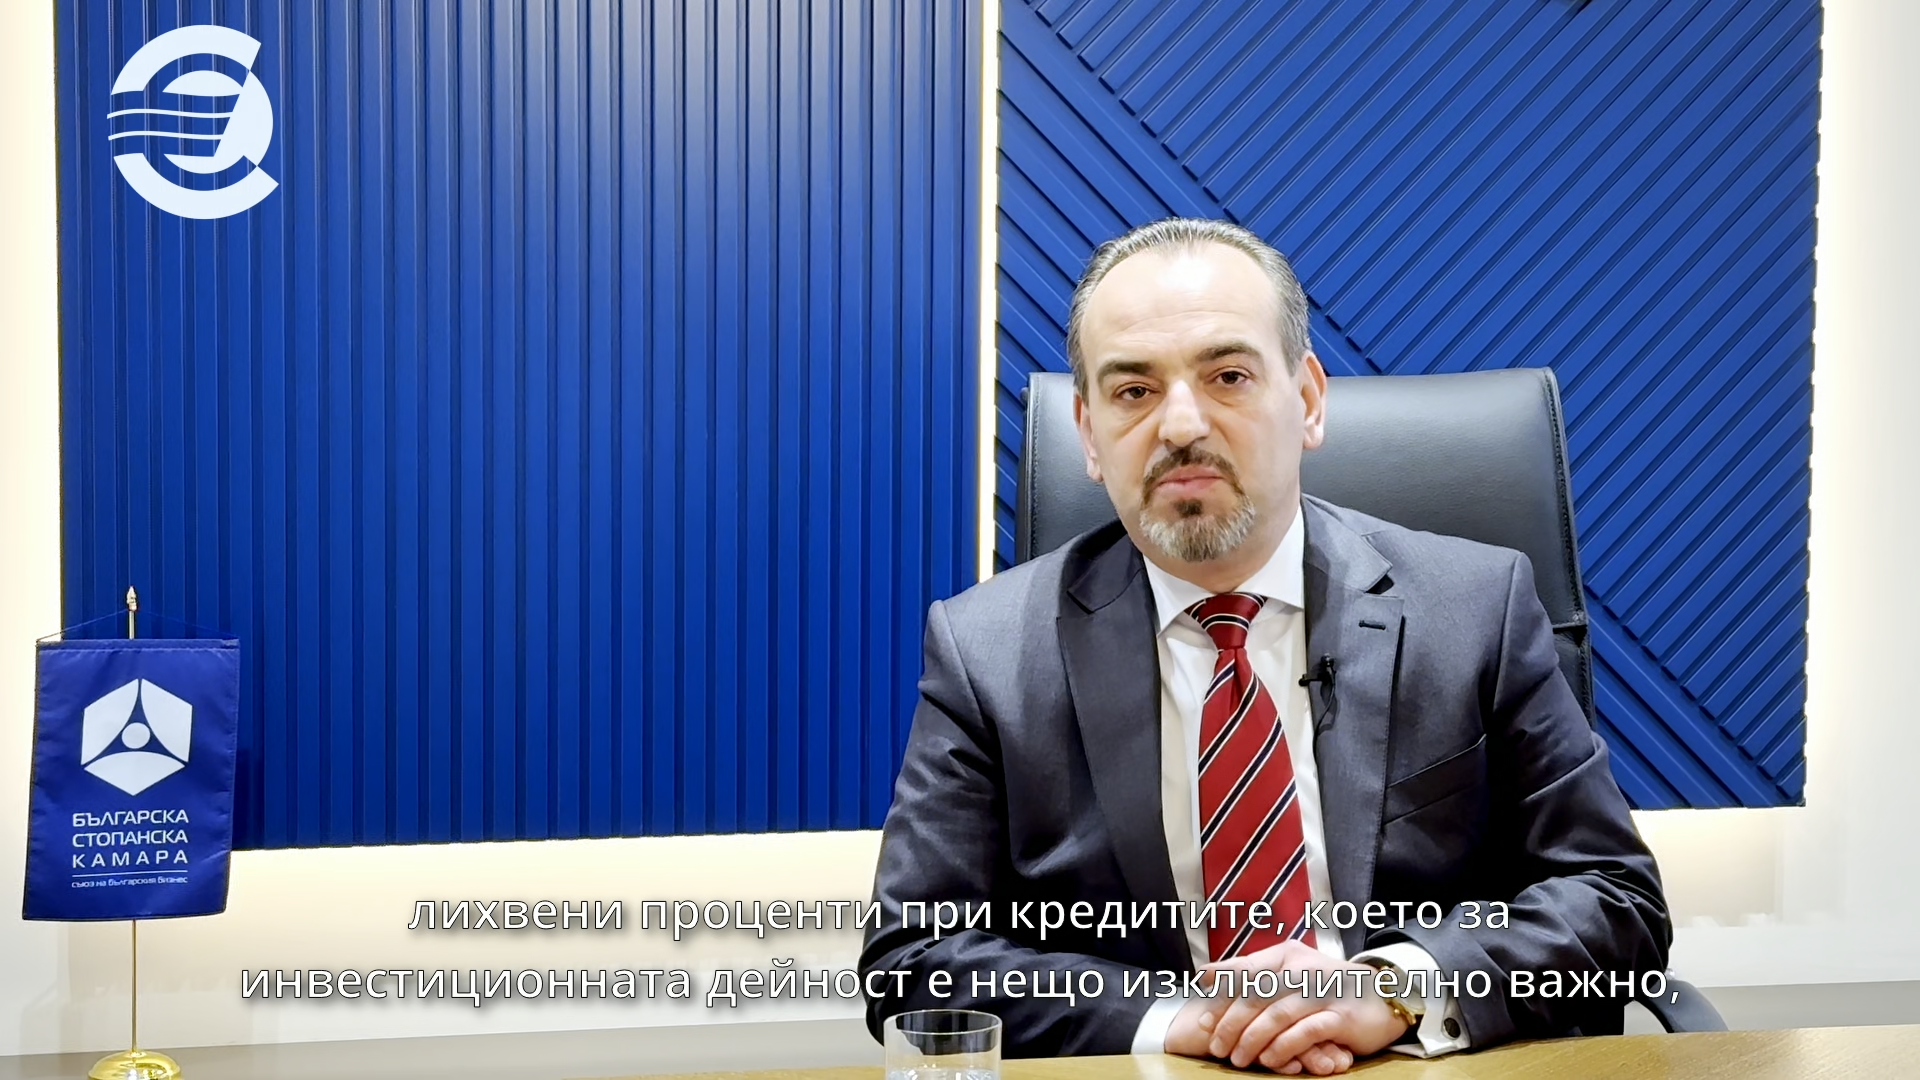 Добри Митрев, председател на Управителния съвет на Българската стопанска камара: Членството на България в еврозоната ще даде един нов хоризонт и стимул за икономиката и индустрията на България